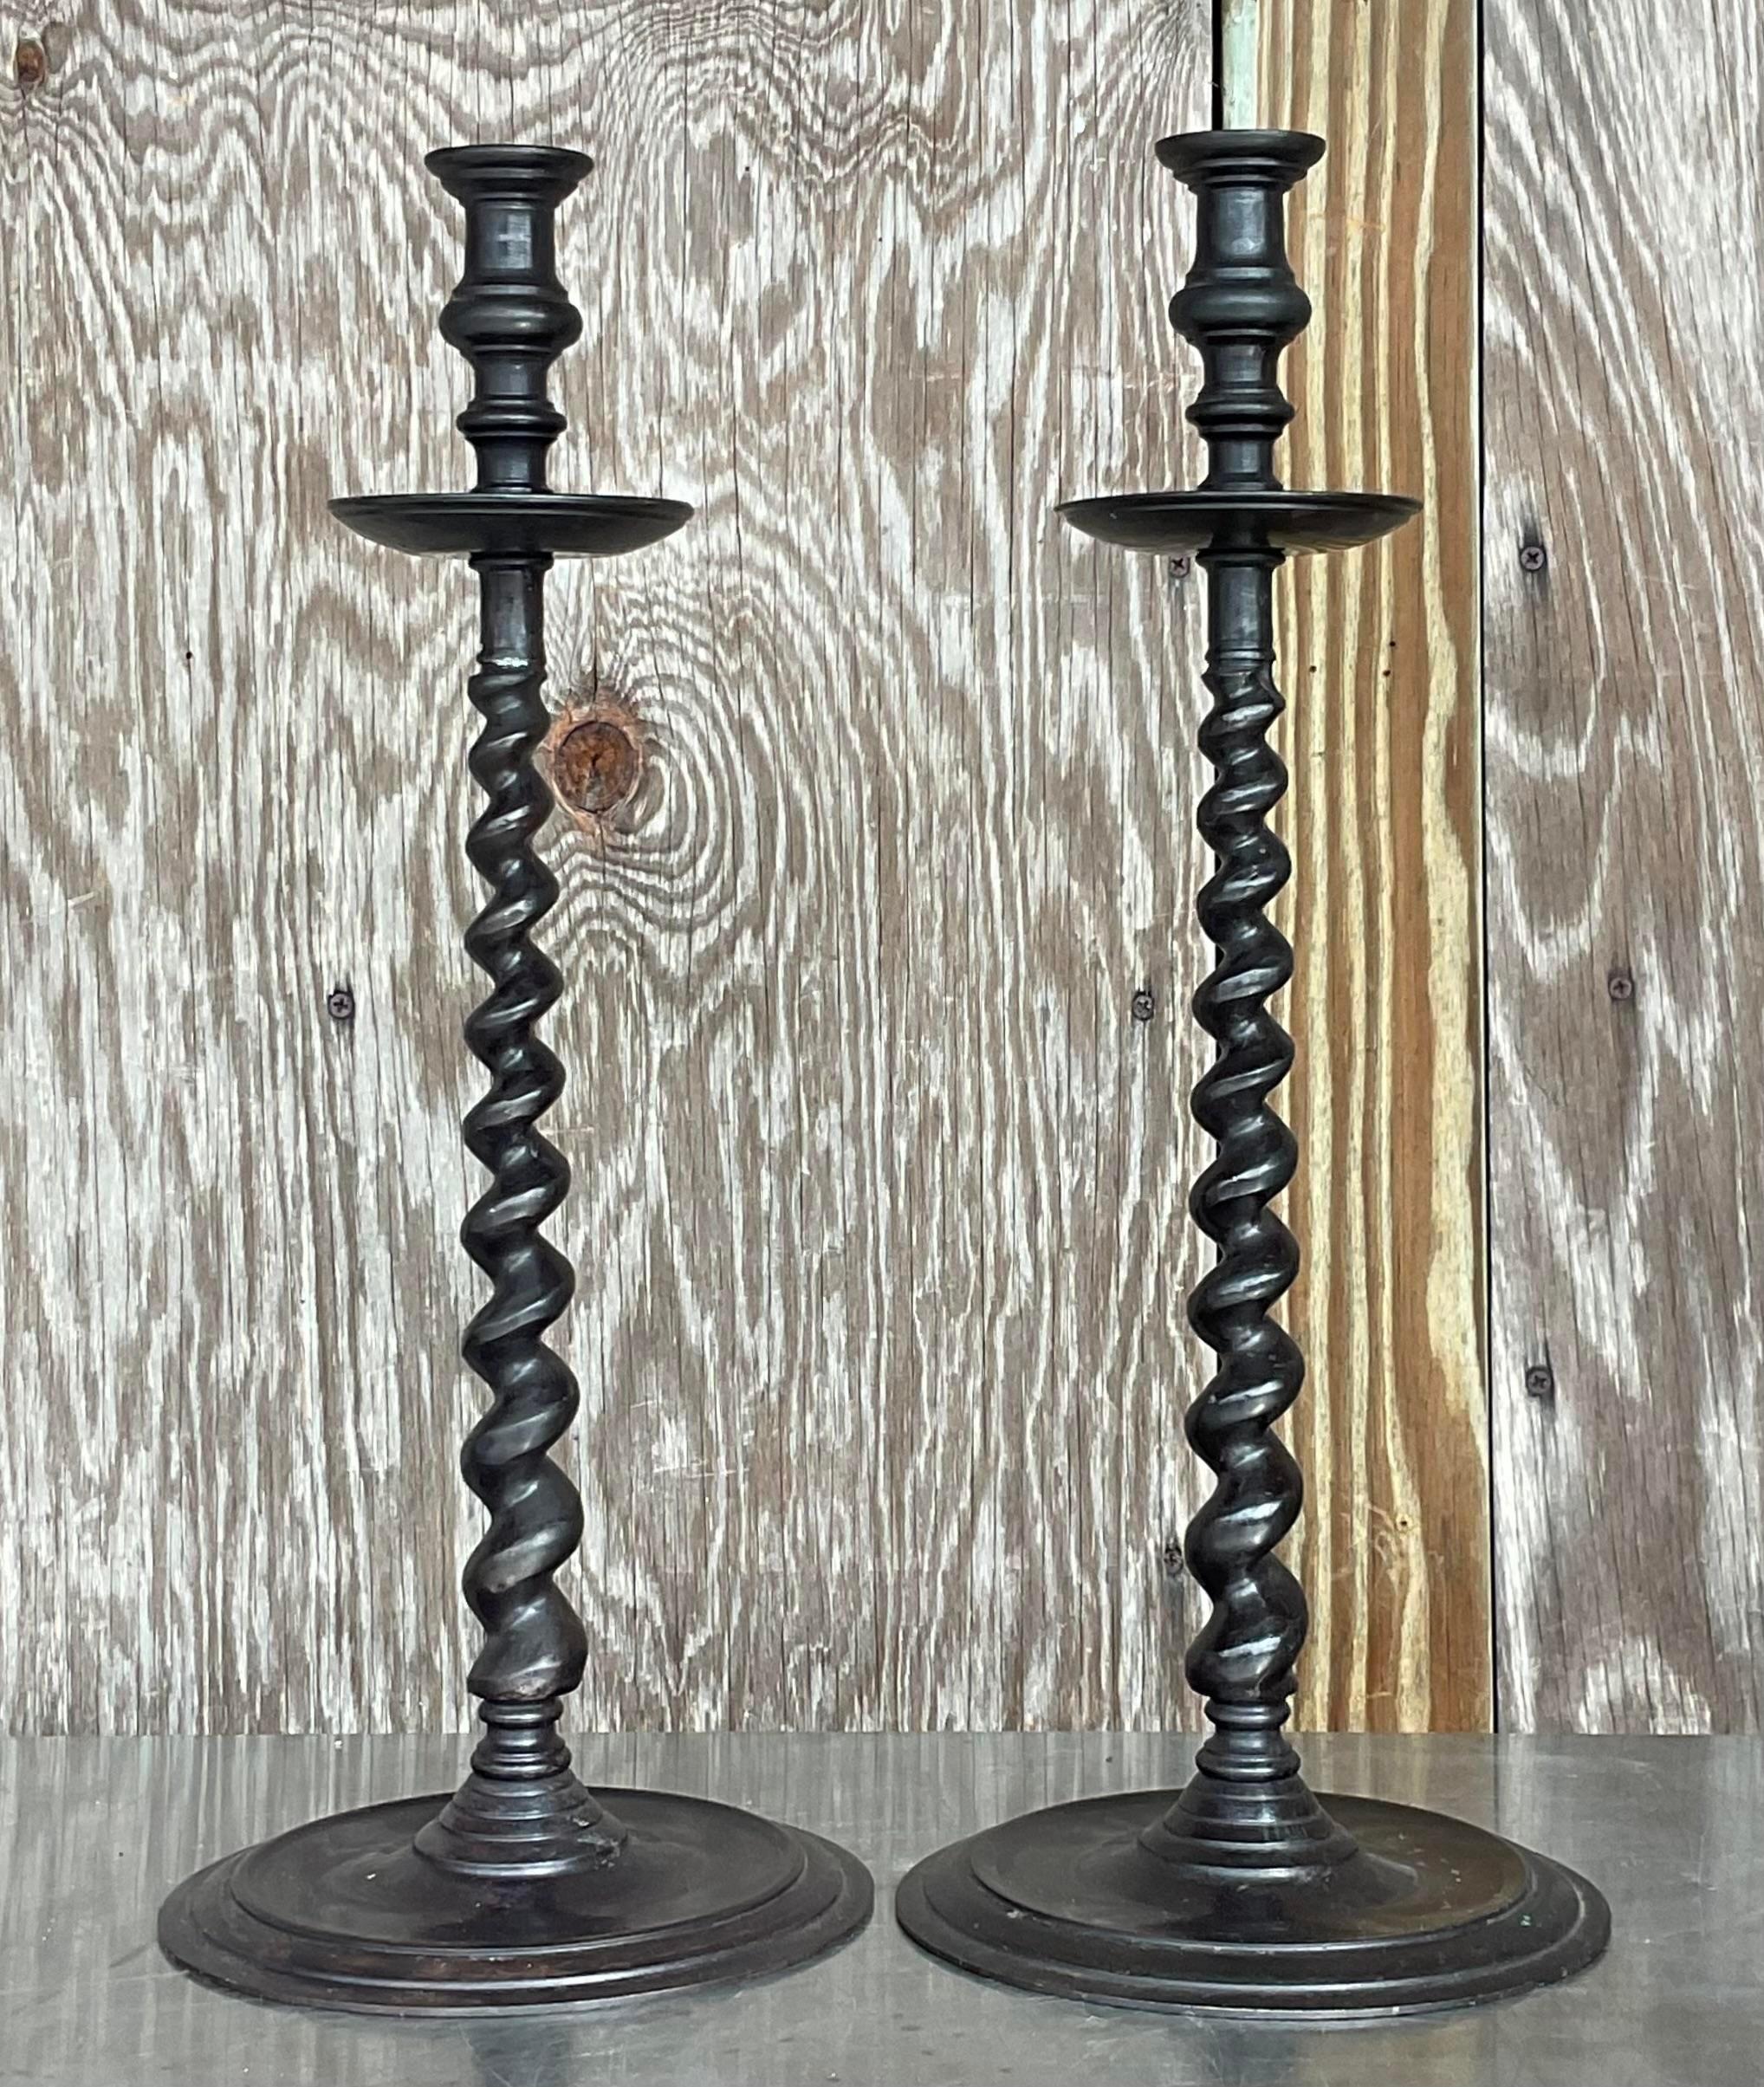 Ein fabelhaftes Paar Boho-Kerzenständer im Vintage-Stil. Ein schickes Gerstenkorn-Design mit patinierter Bronzeoberfläche. Hergestellt von der kultigen Maitland Smith Gruppe und auf der Unterseite mit einem Etikett versehen. Erworben aus einem